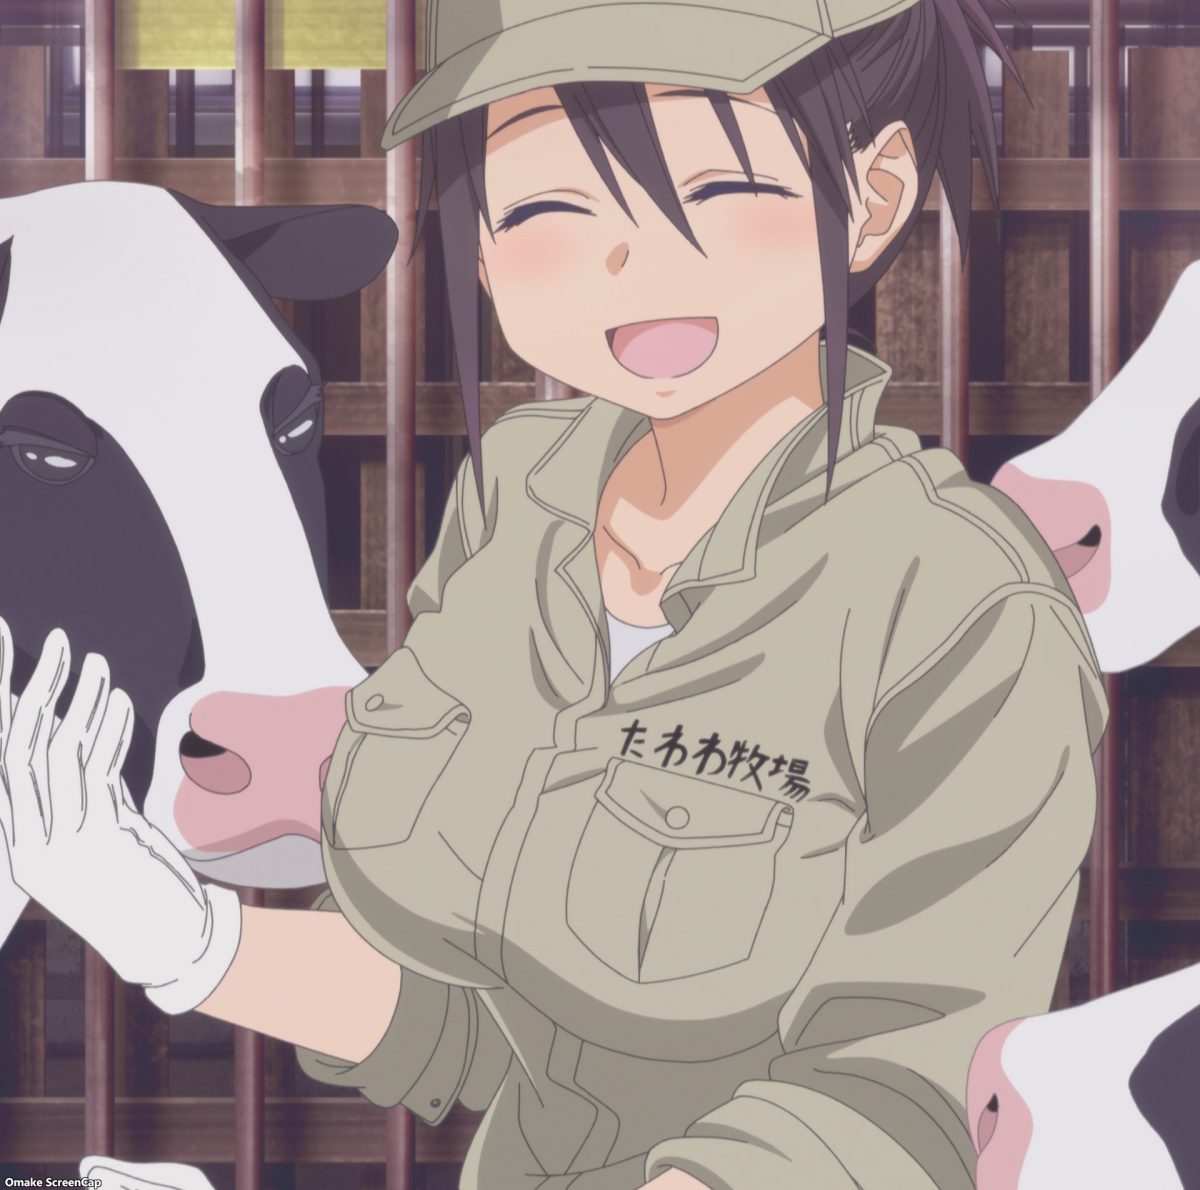 Tawawa on Monday Two, Episode 5: Ai-chan and Milk Jugs